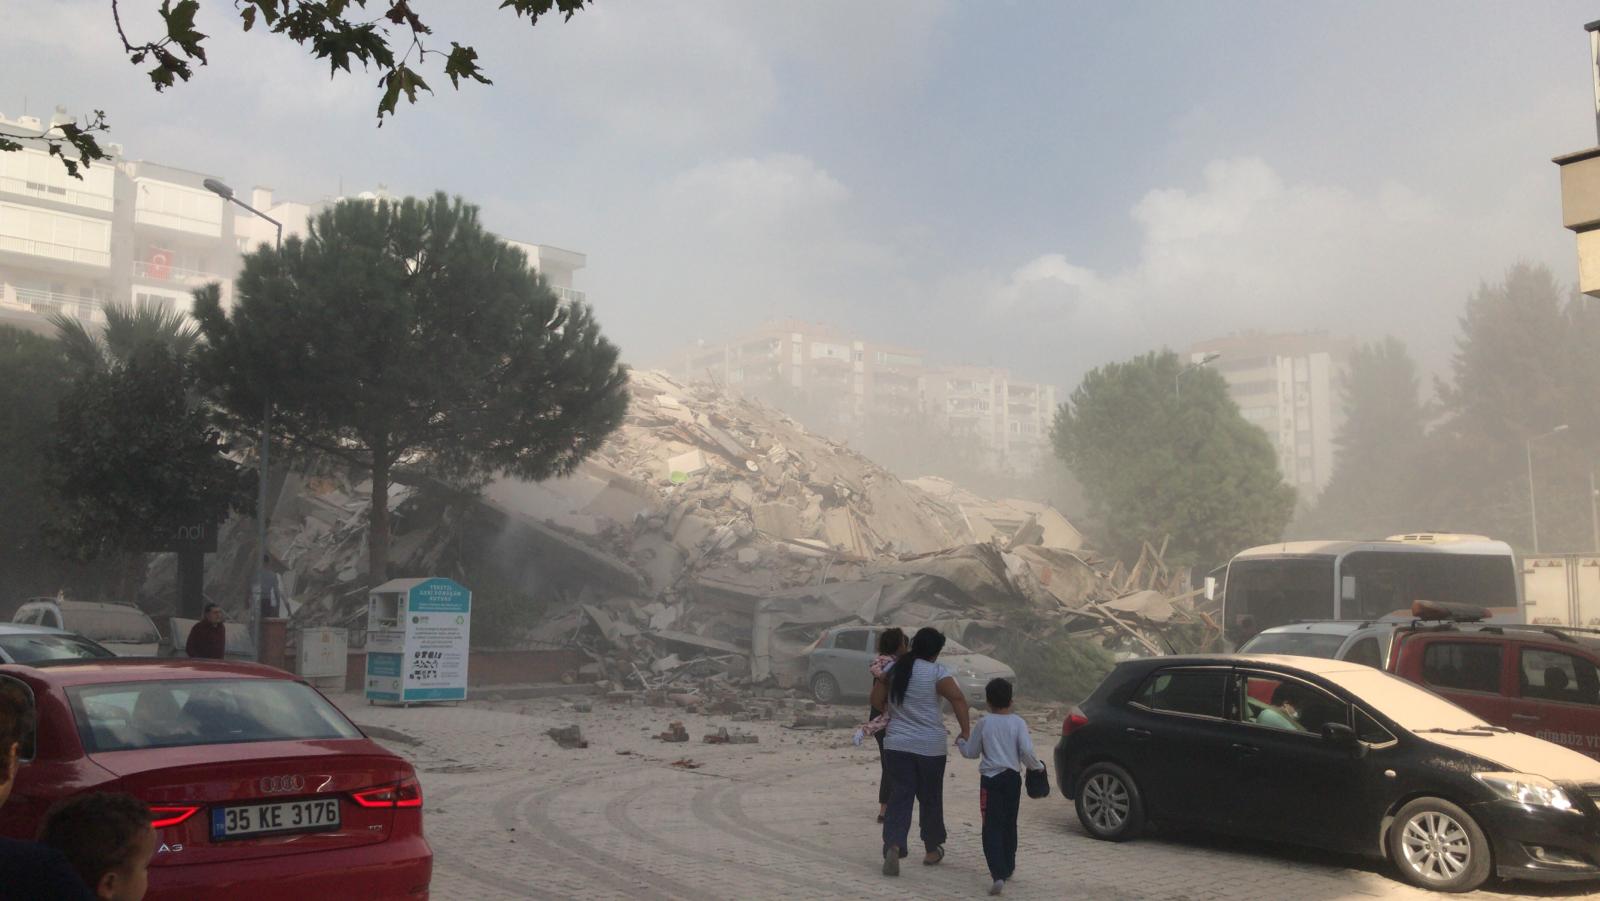 زلزال بقوة 6.6 درجات يضرب ولاية إزمير في تركيا